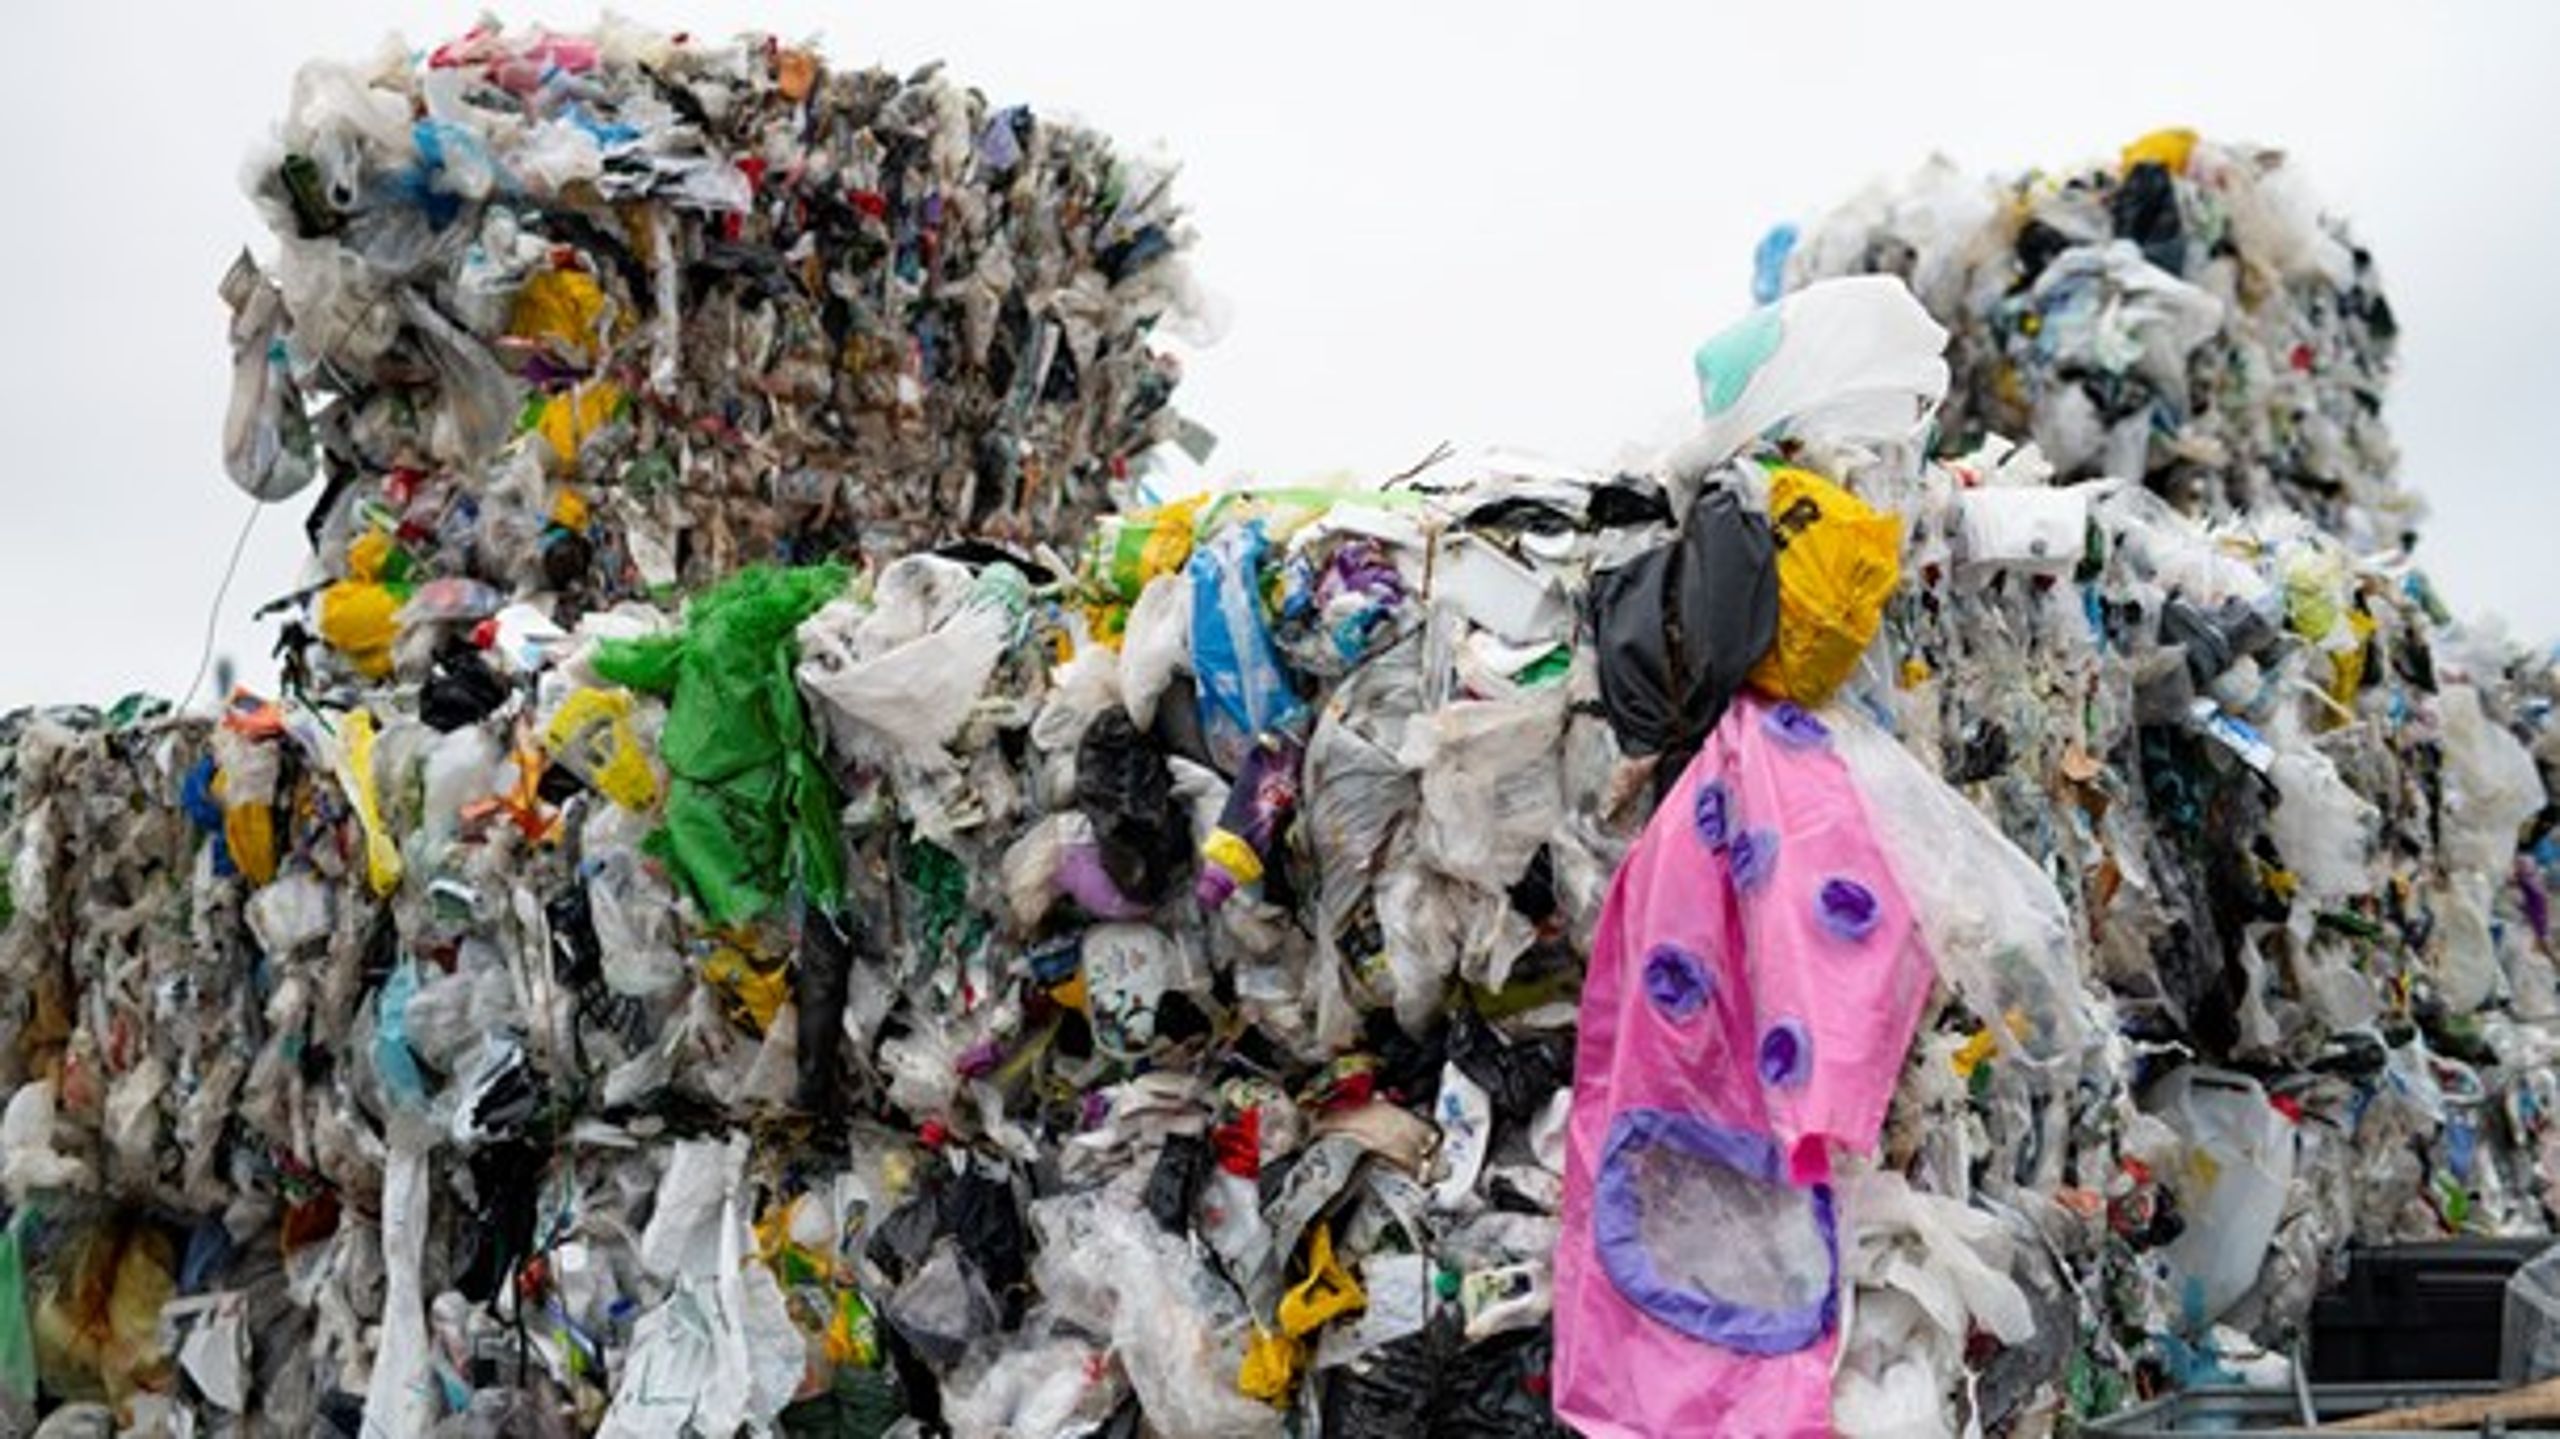 At producenten skal betale, når emballage bliver smidt ud som affald, lyder som et naturligt incitament. Helt så let går det bare ikke, mener Dansk Affaldsforening og Avfall Sverige.